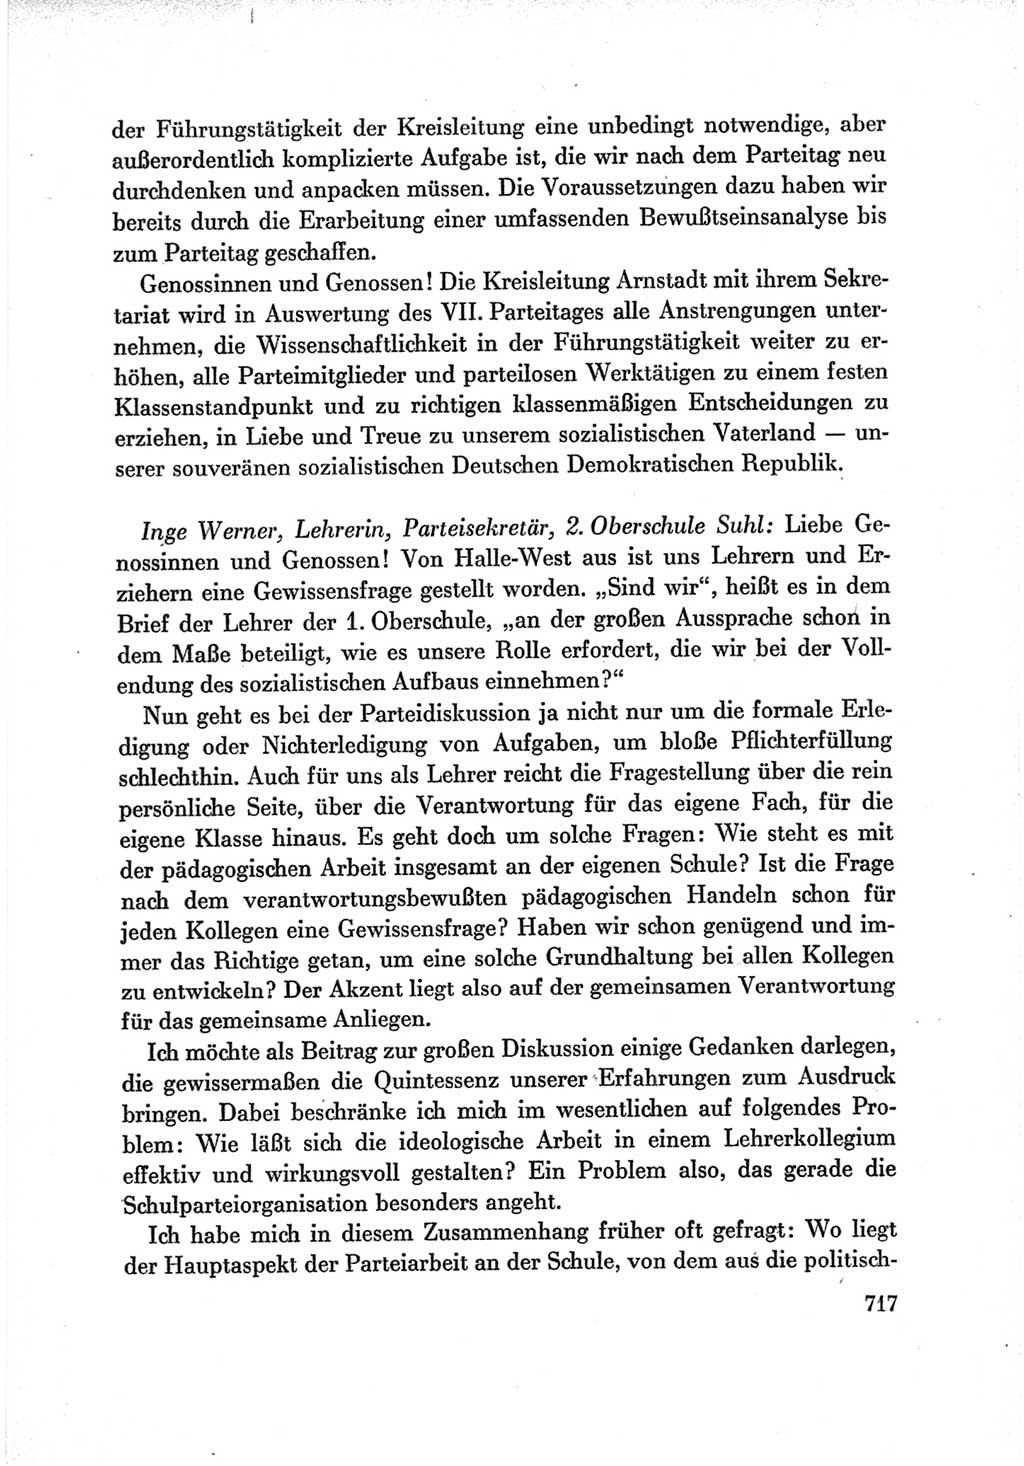 Protokoll der Verhandlungen des Ⅶ. Parteitages der Sozialistischen Einheitspartei Deutschlands (SED) [Deutsche Demokratische Republik (DDR)] 1967, Band Ⅲ, Seite 717 (Prot. Verh. Ⅶ. PT SED DDR 1967, Bd. Ⅲ, S. 717)